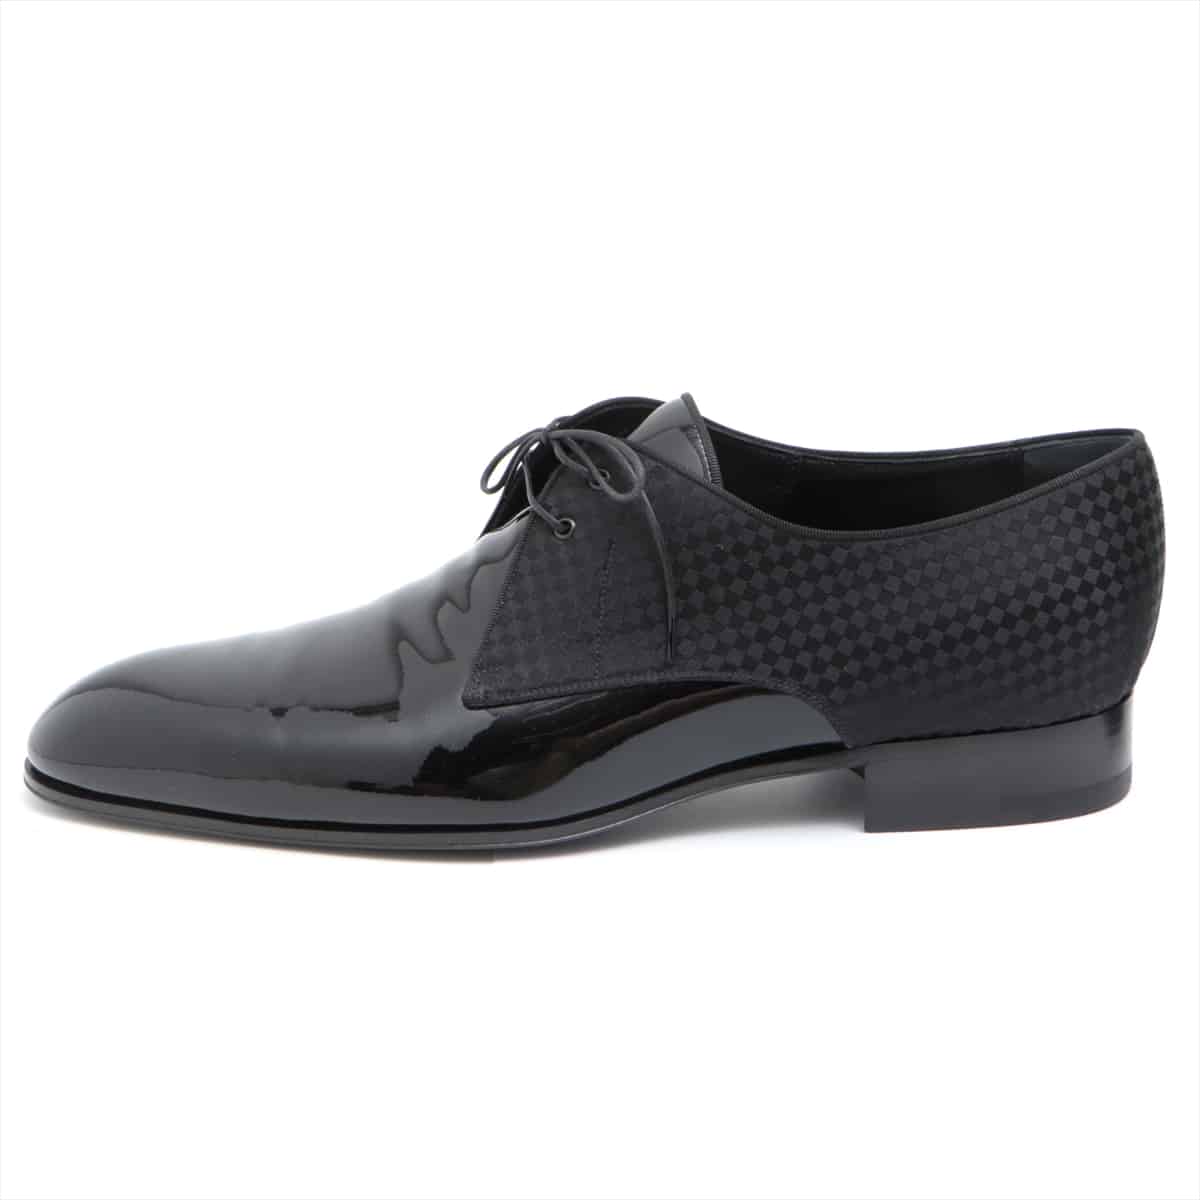 Louis Vuitton MT0177 Patent leather Dress shoes 9 Men's Black Damier With genuine shoe tree